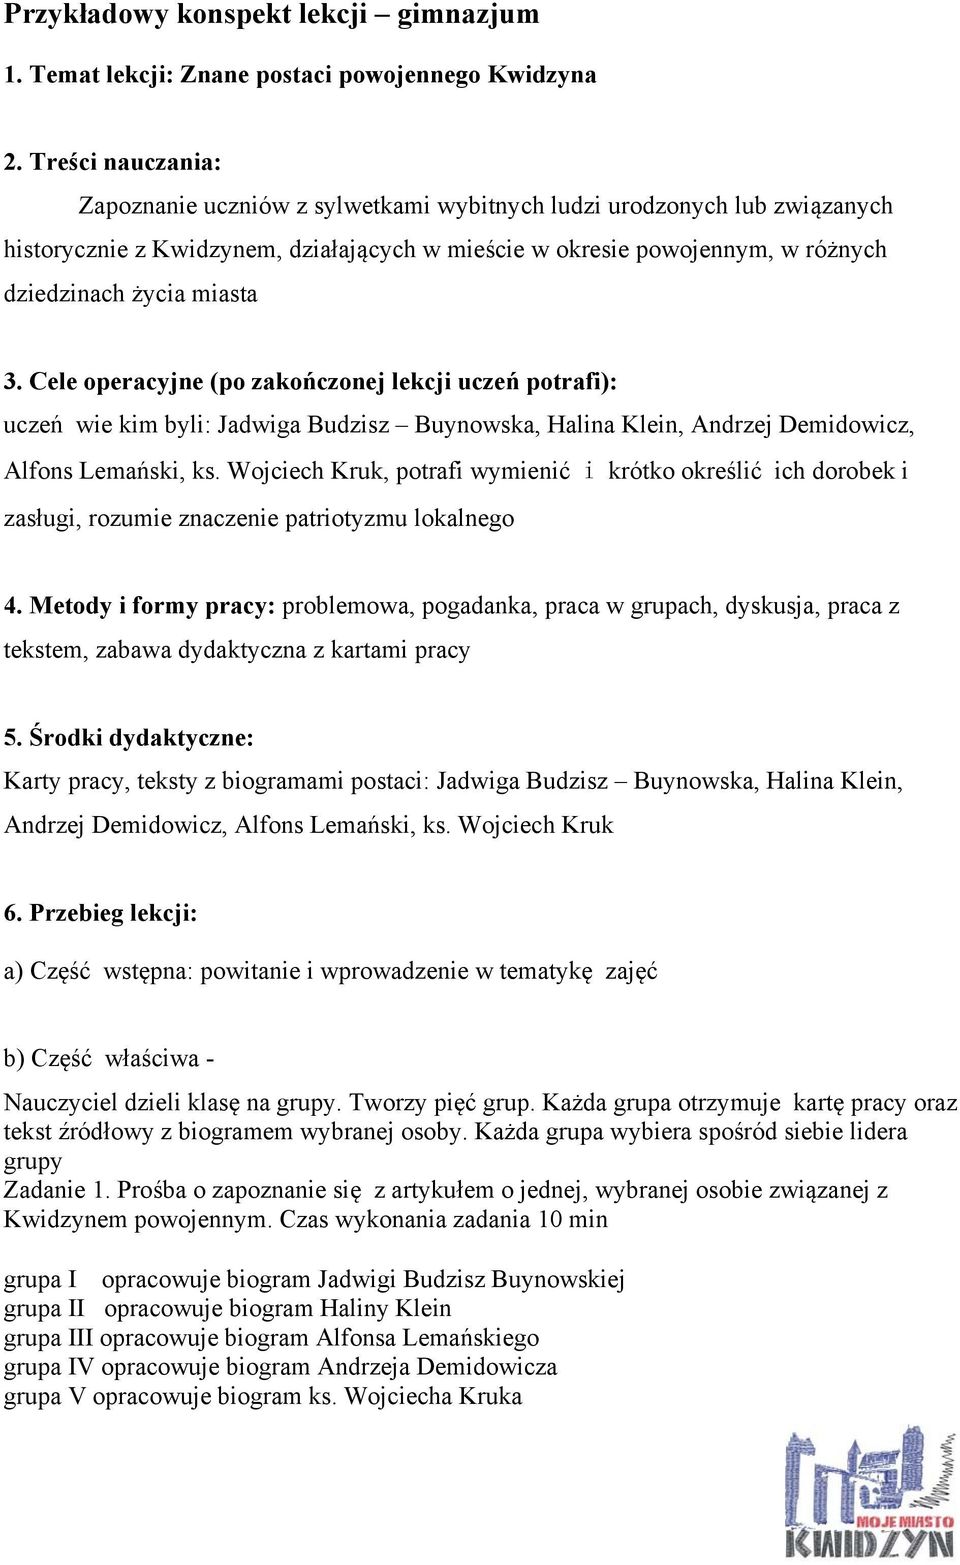 Przykładowy konspekt lekcji gimnazjum - PDF Darmowe pobieranie